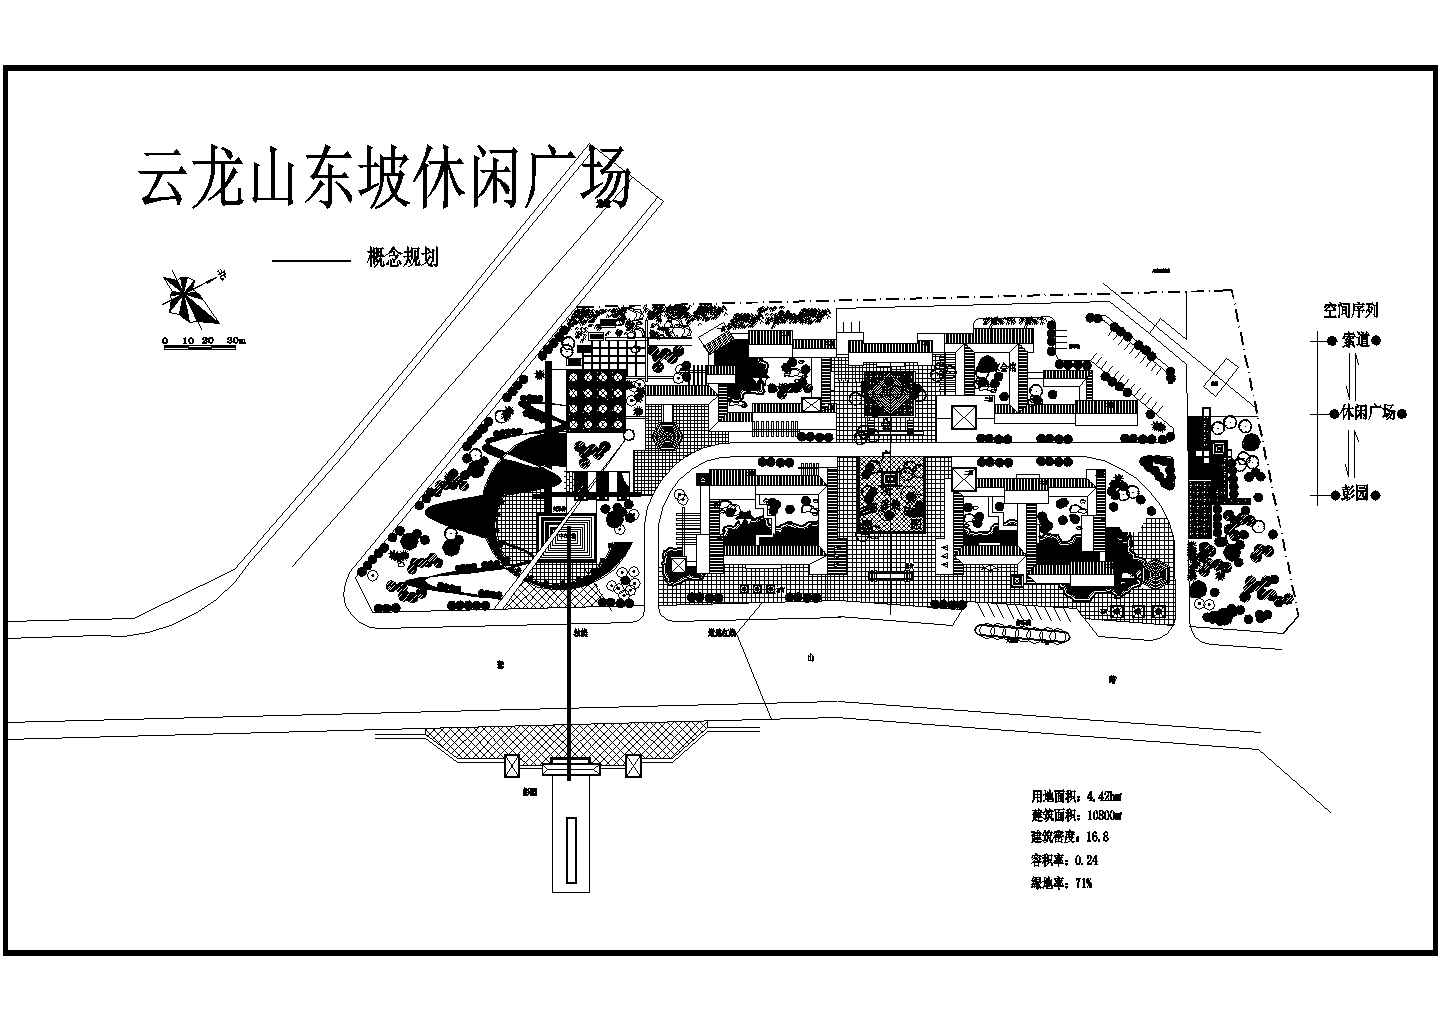 云龙山东坡休闲广场概念规划平面图